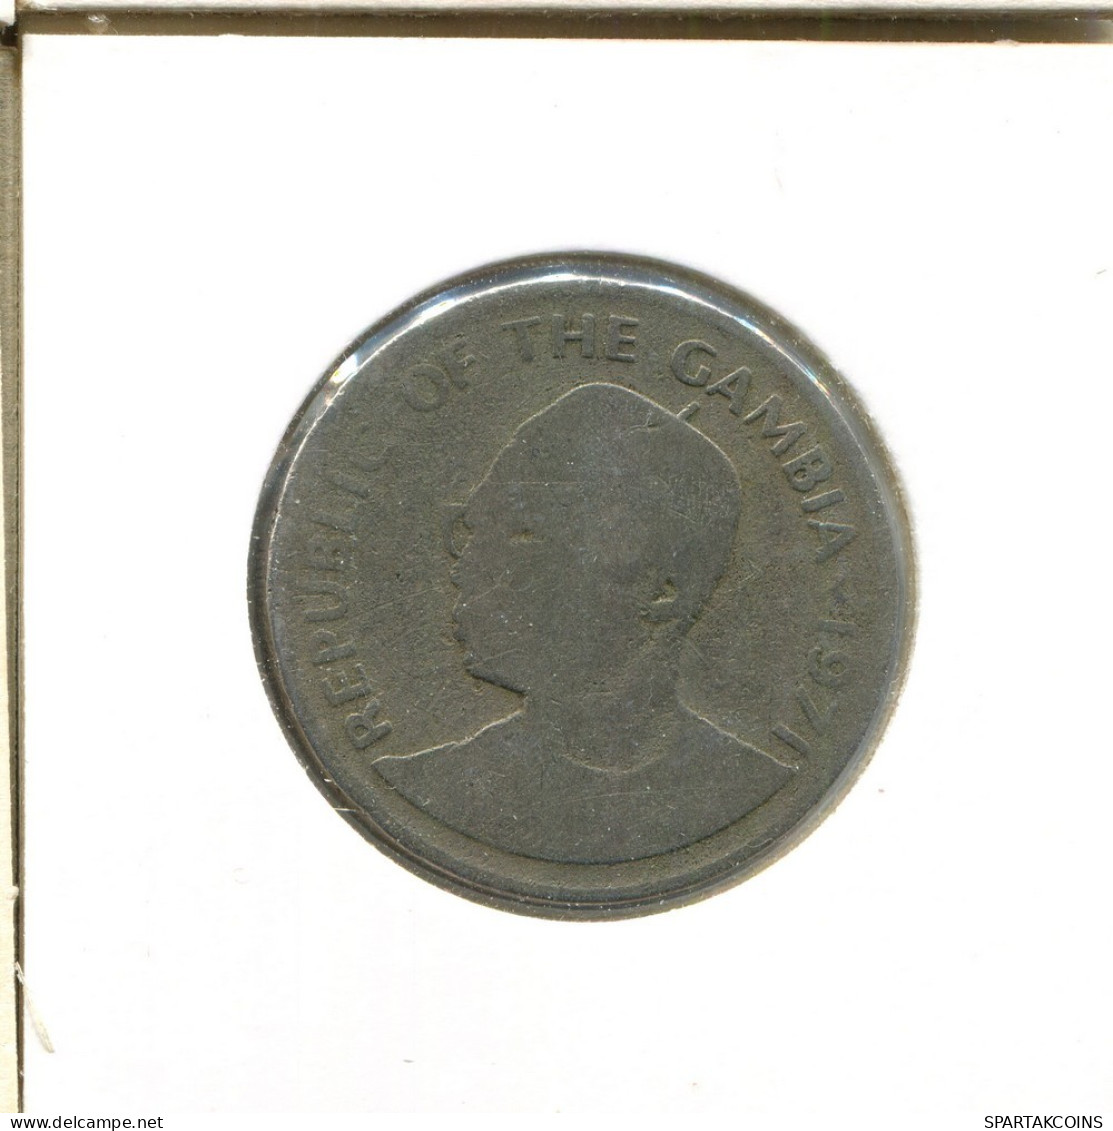 50 BUTUTS 1971 GAMBIA Moneda #AS755.E.A - Gambia